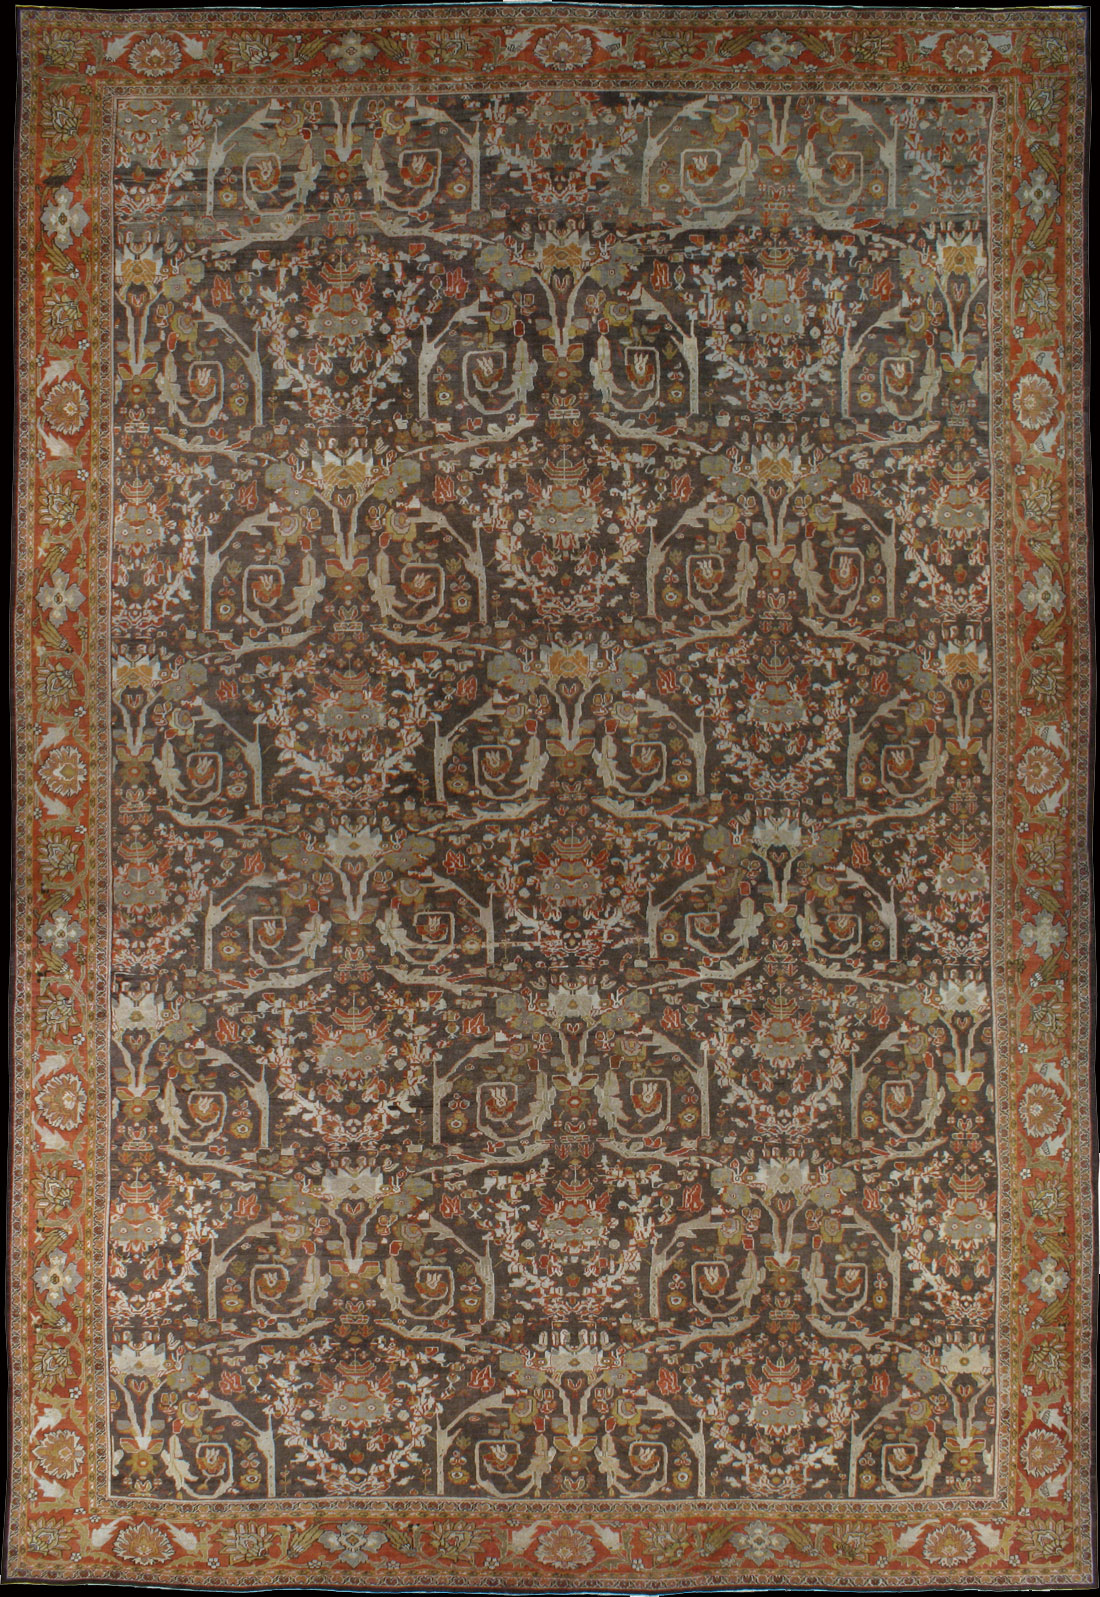 Antique sultan abad Carpet - # 8765